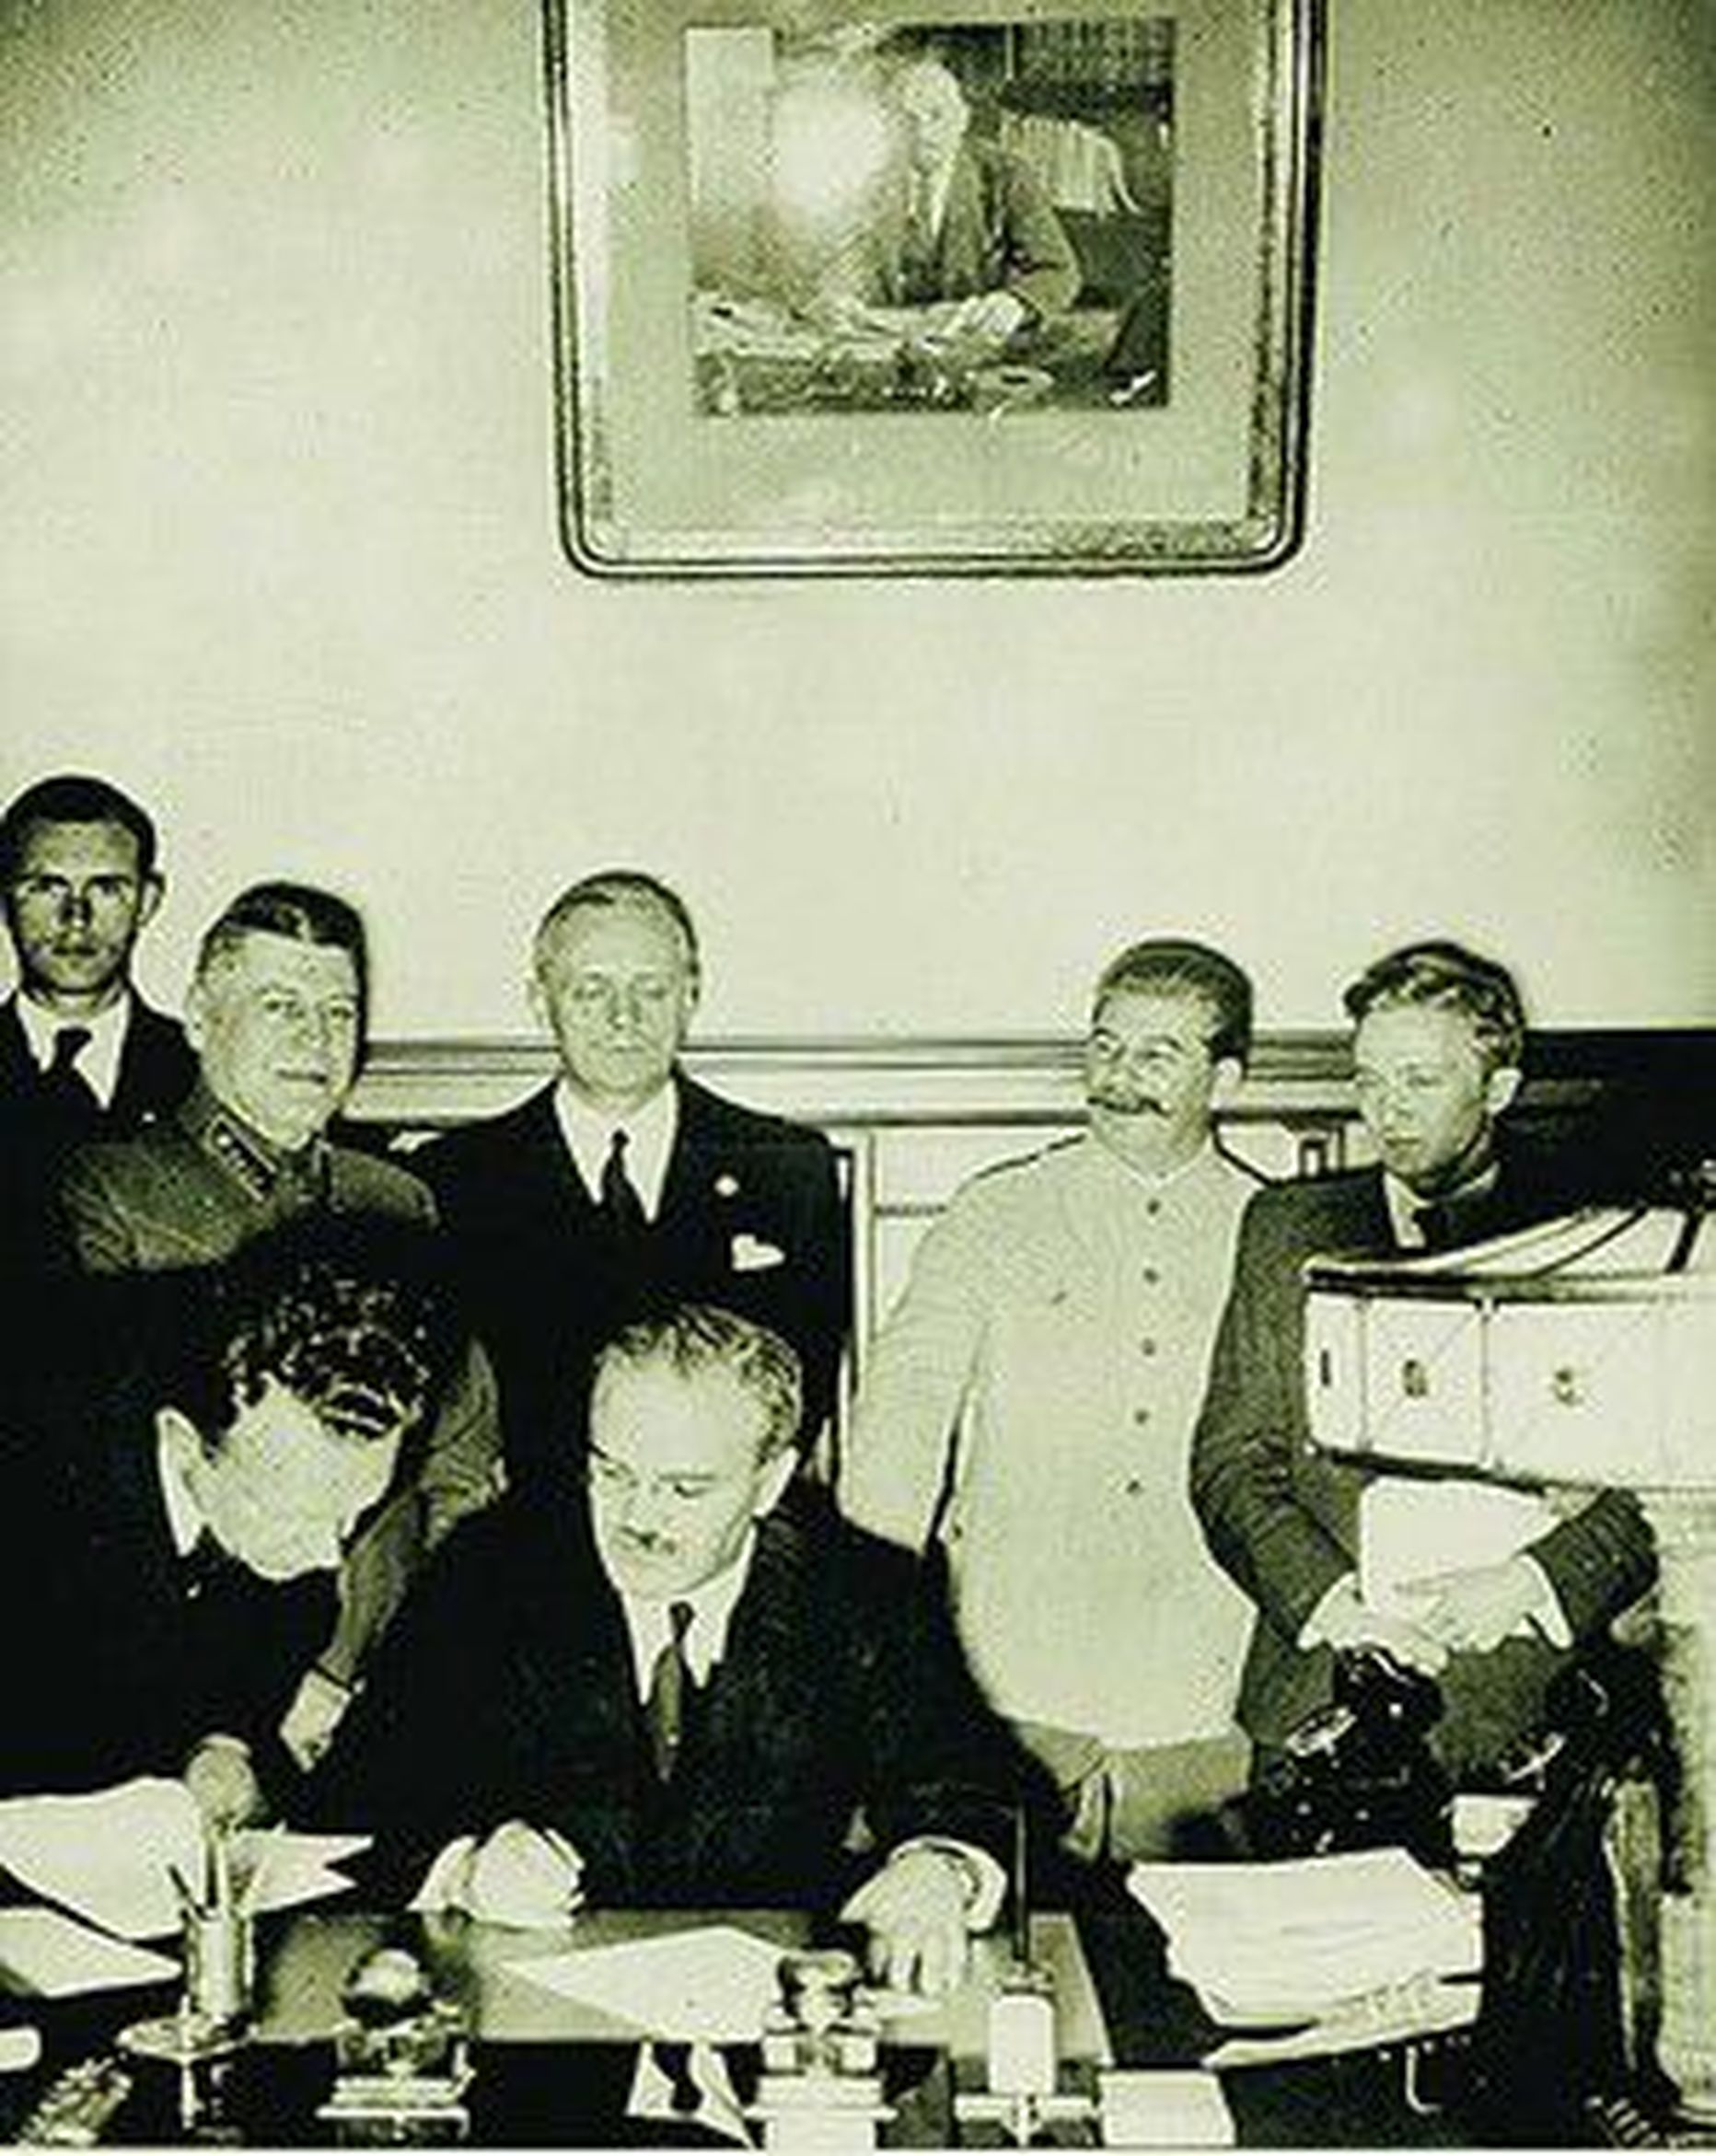 Molotov-Ribbentropi pakti allkirjastamine 23. augustil 1939. Molotov istub ees keskel, Ribbentrop seisab tema selja taga.